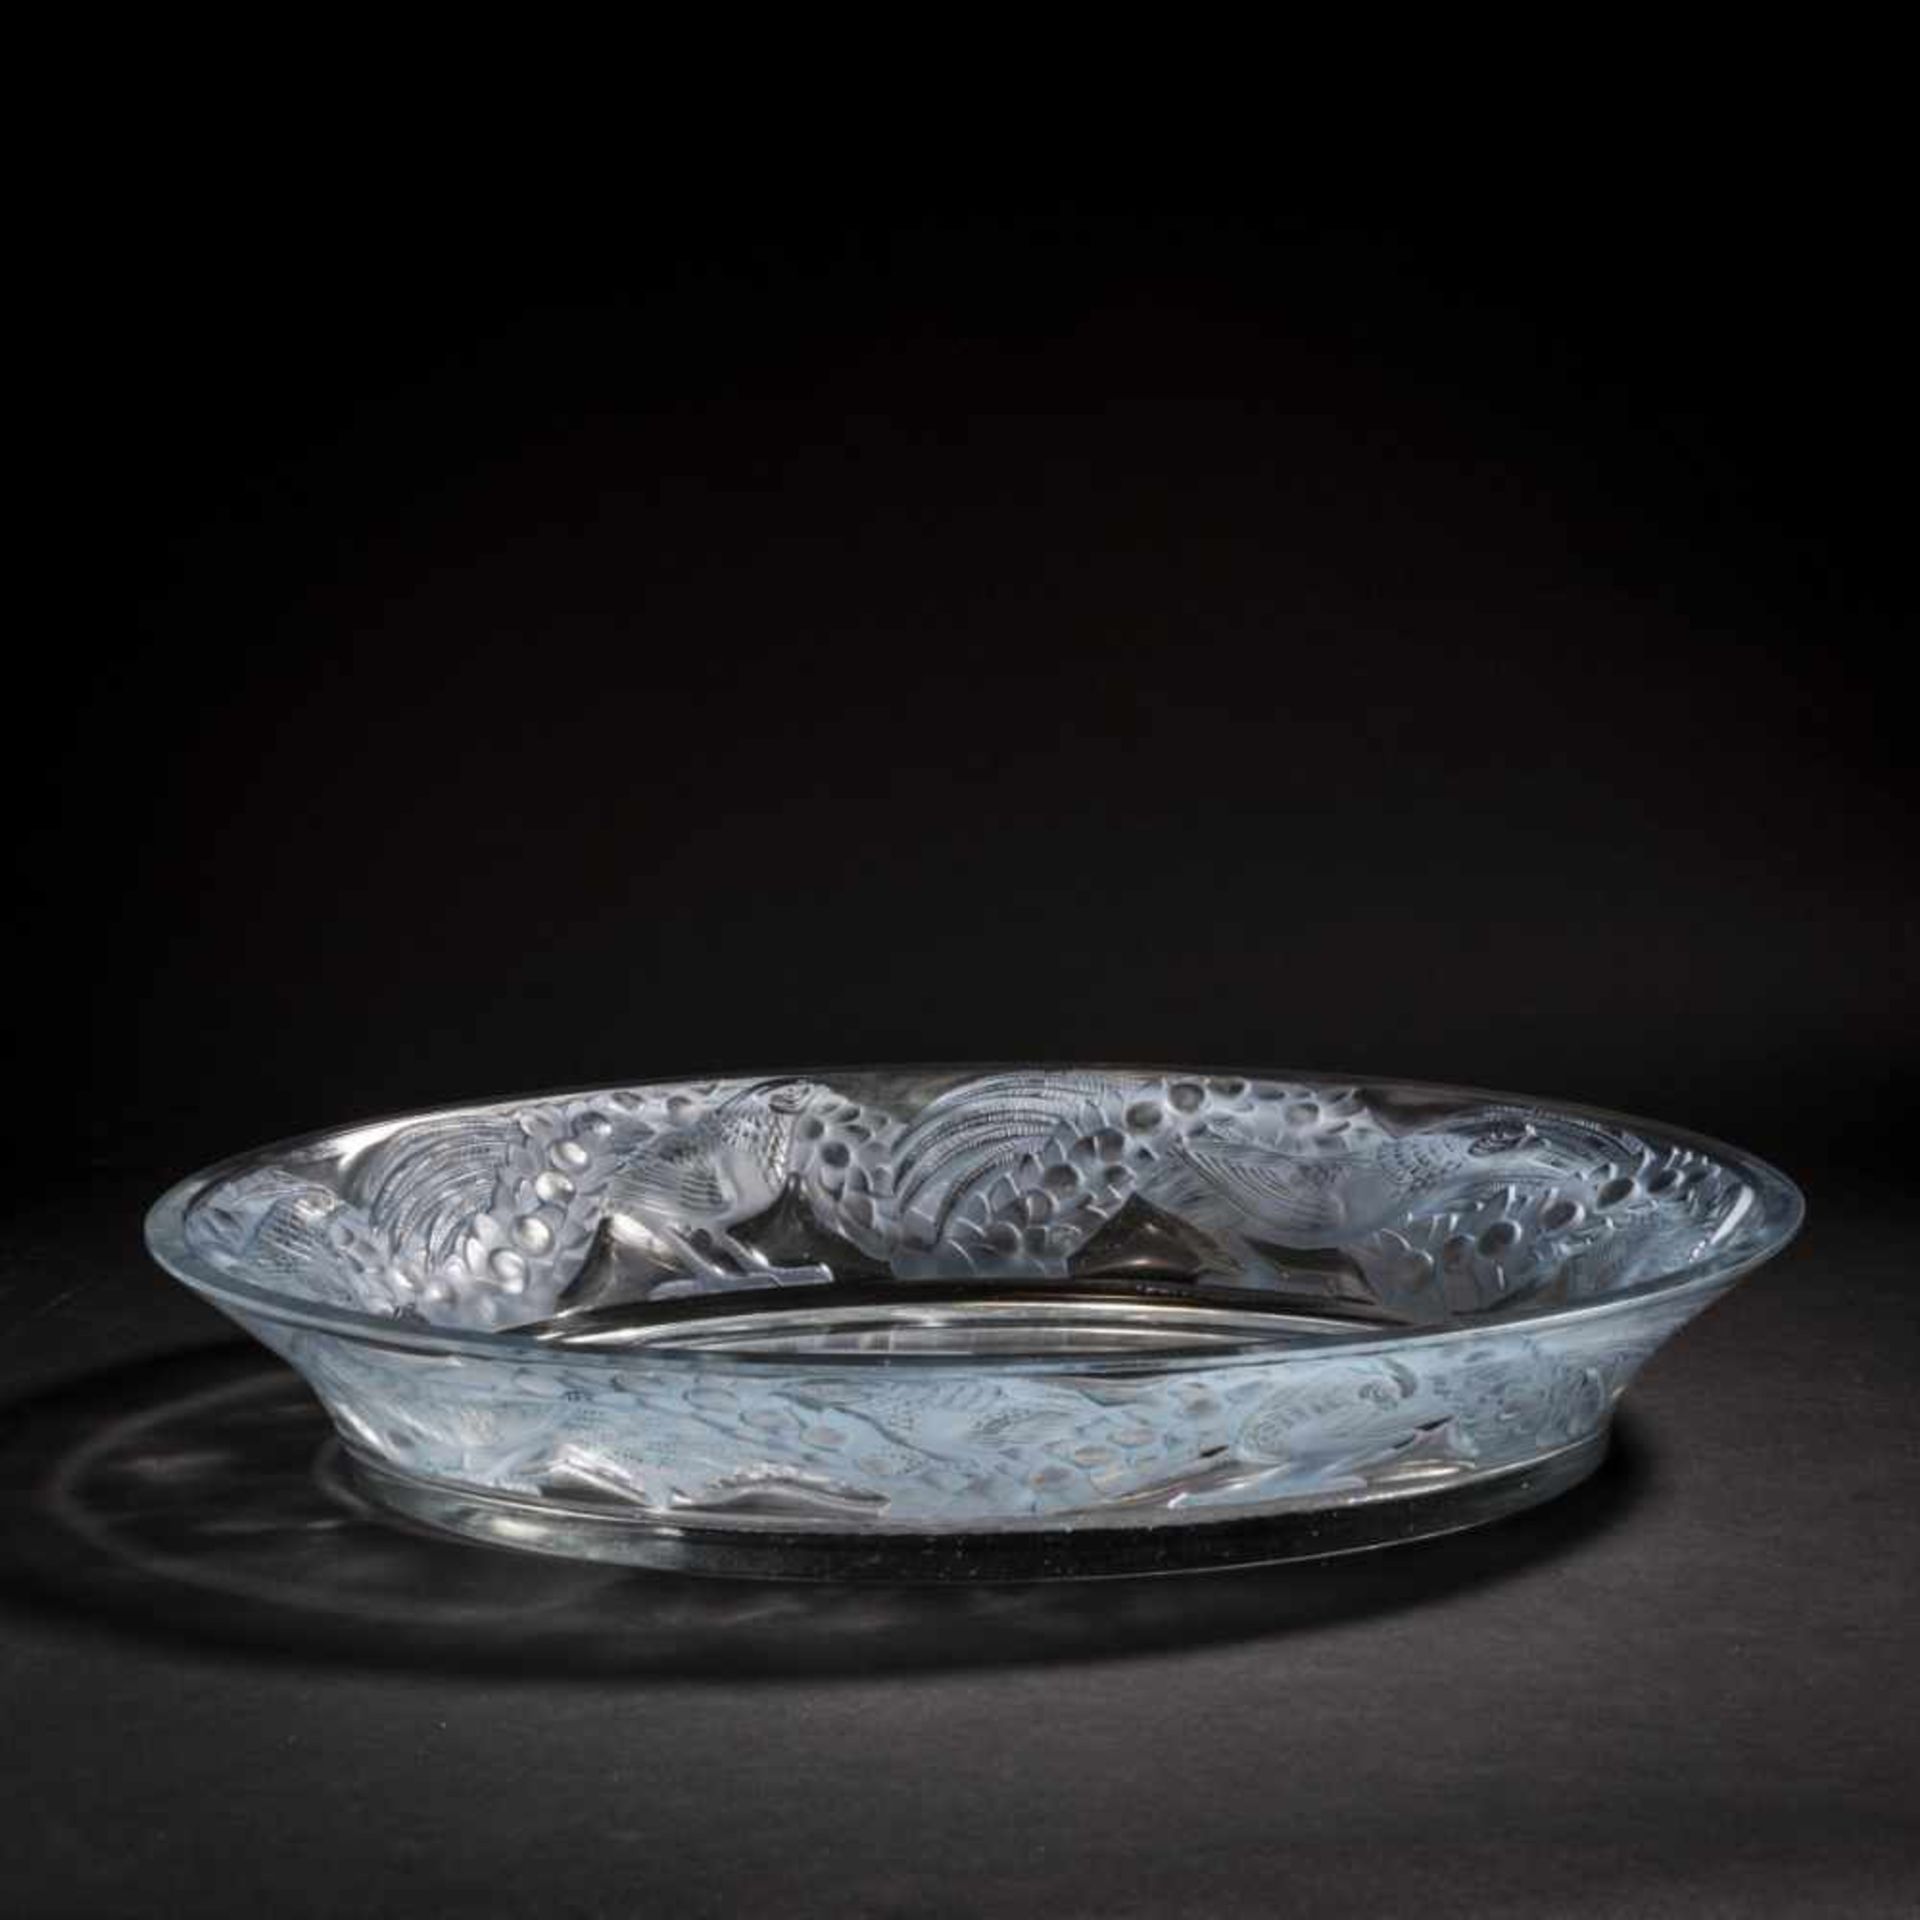 René Lalique, 'Faisans' bowl, 1941'Faisans' bowl, 1941L. 43.5 cm. Clear, moulded glass, partially